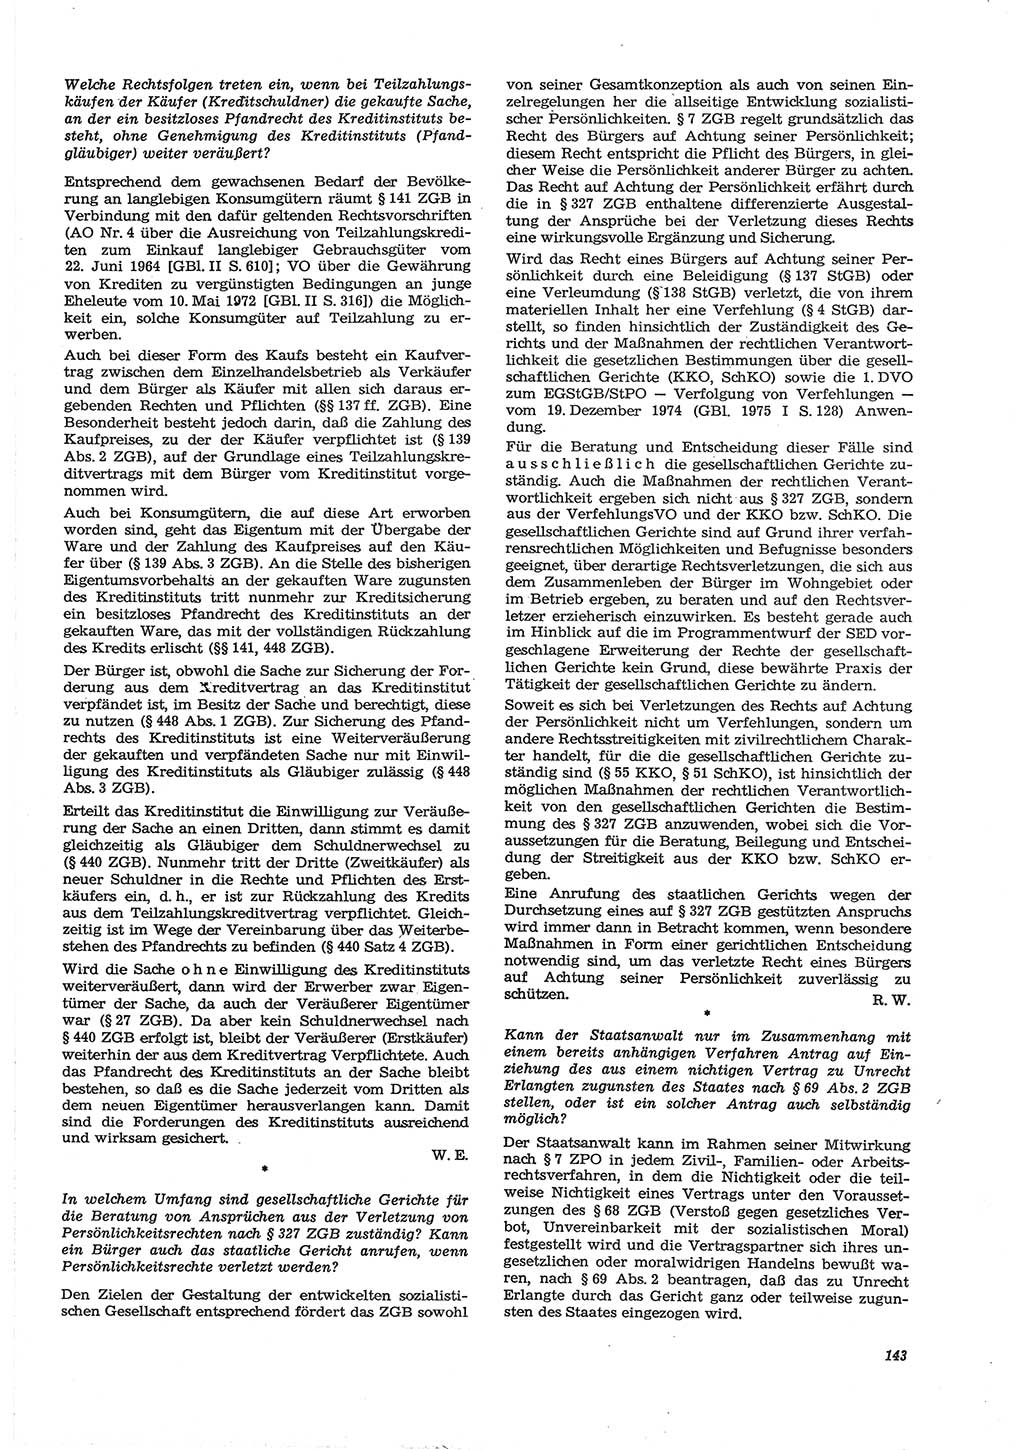 Neue Justiz (NJ), Zeitschrift für Recht und Rechtswissenschaft [Deutsche Demokratische Republik (DDR)], 30. Jahrgang 1976, Seite 143 (NJ DDR 1976, S. 143)